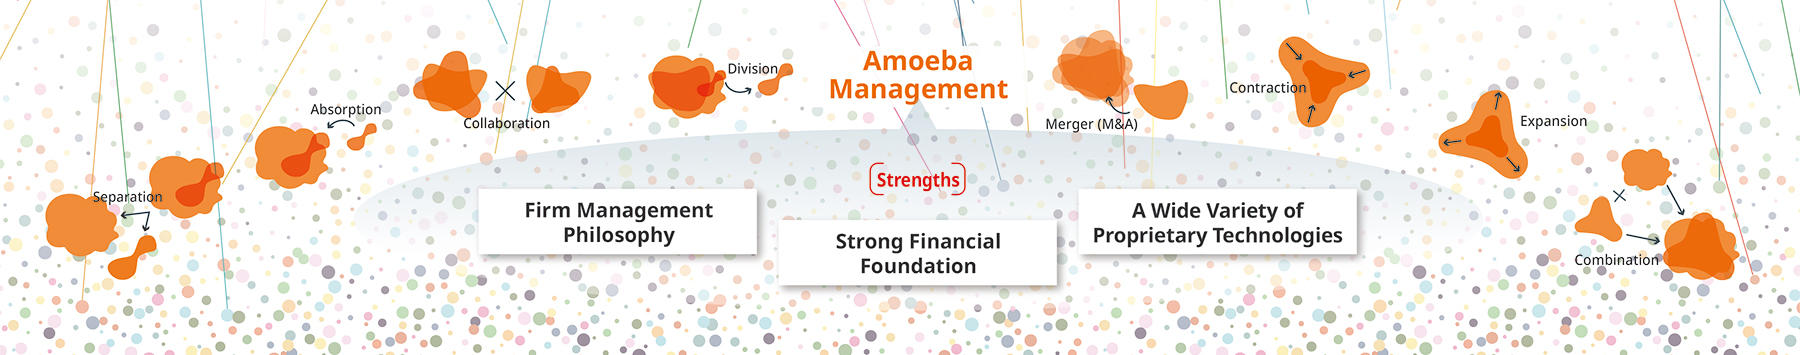 image: Amoeba Management